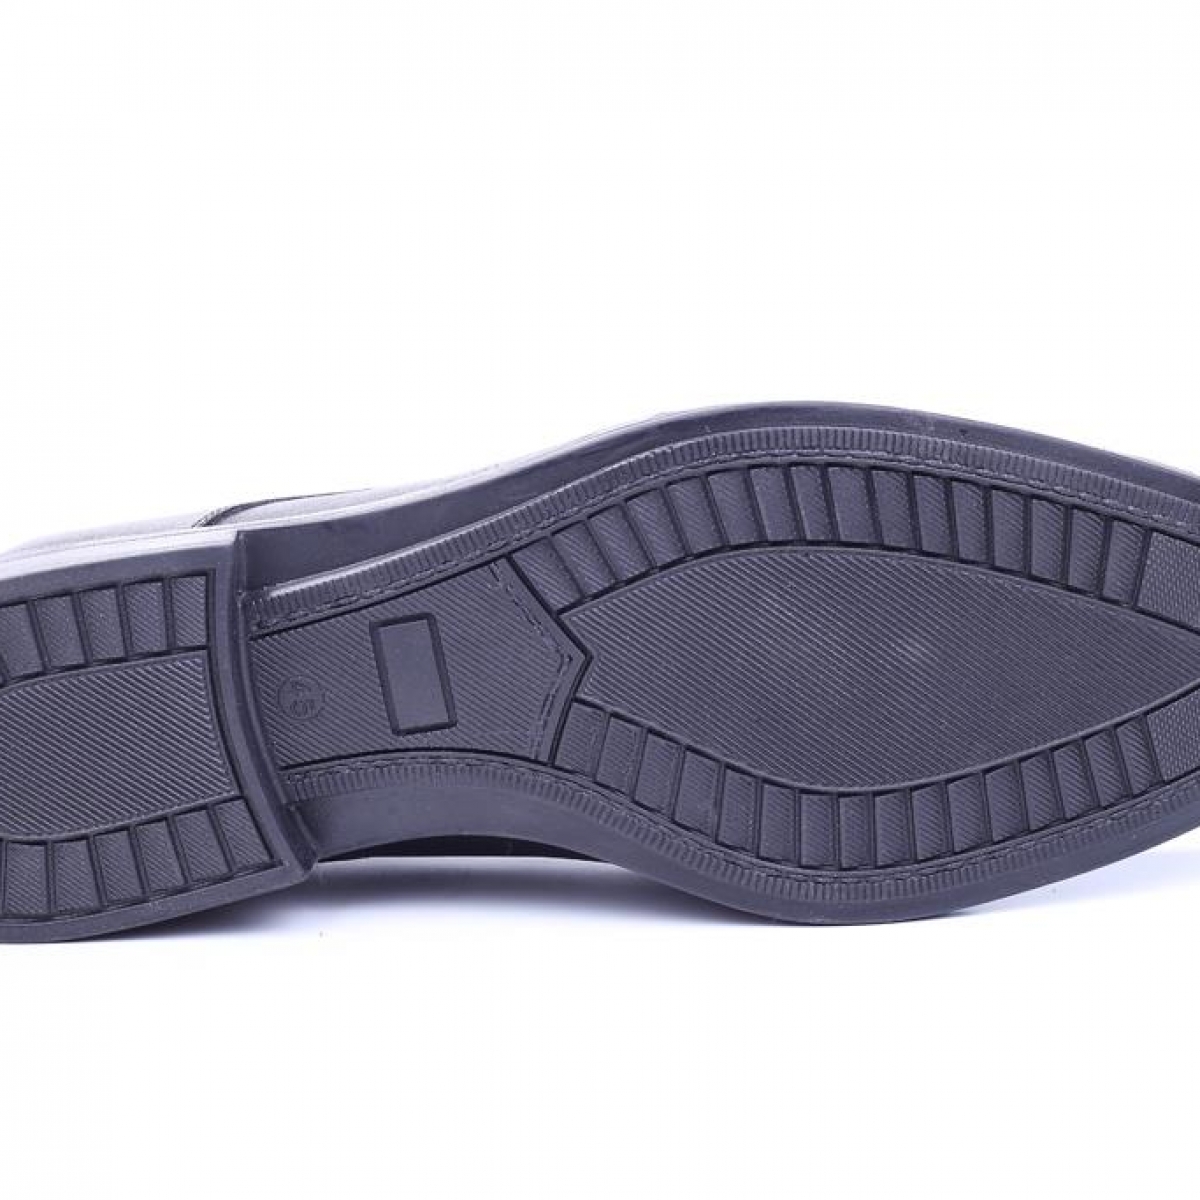 Flo Tardelli 4345 Siyah Büyük Numara Termo Taban Bağcıklı Hakiki Deri Erkek Ayakkabı. 5